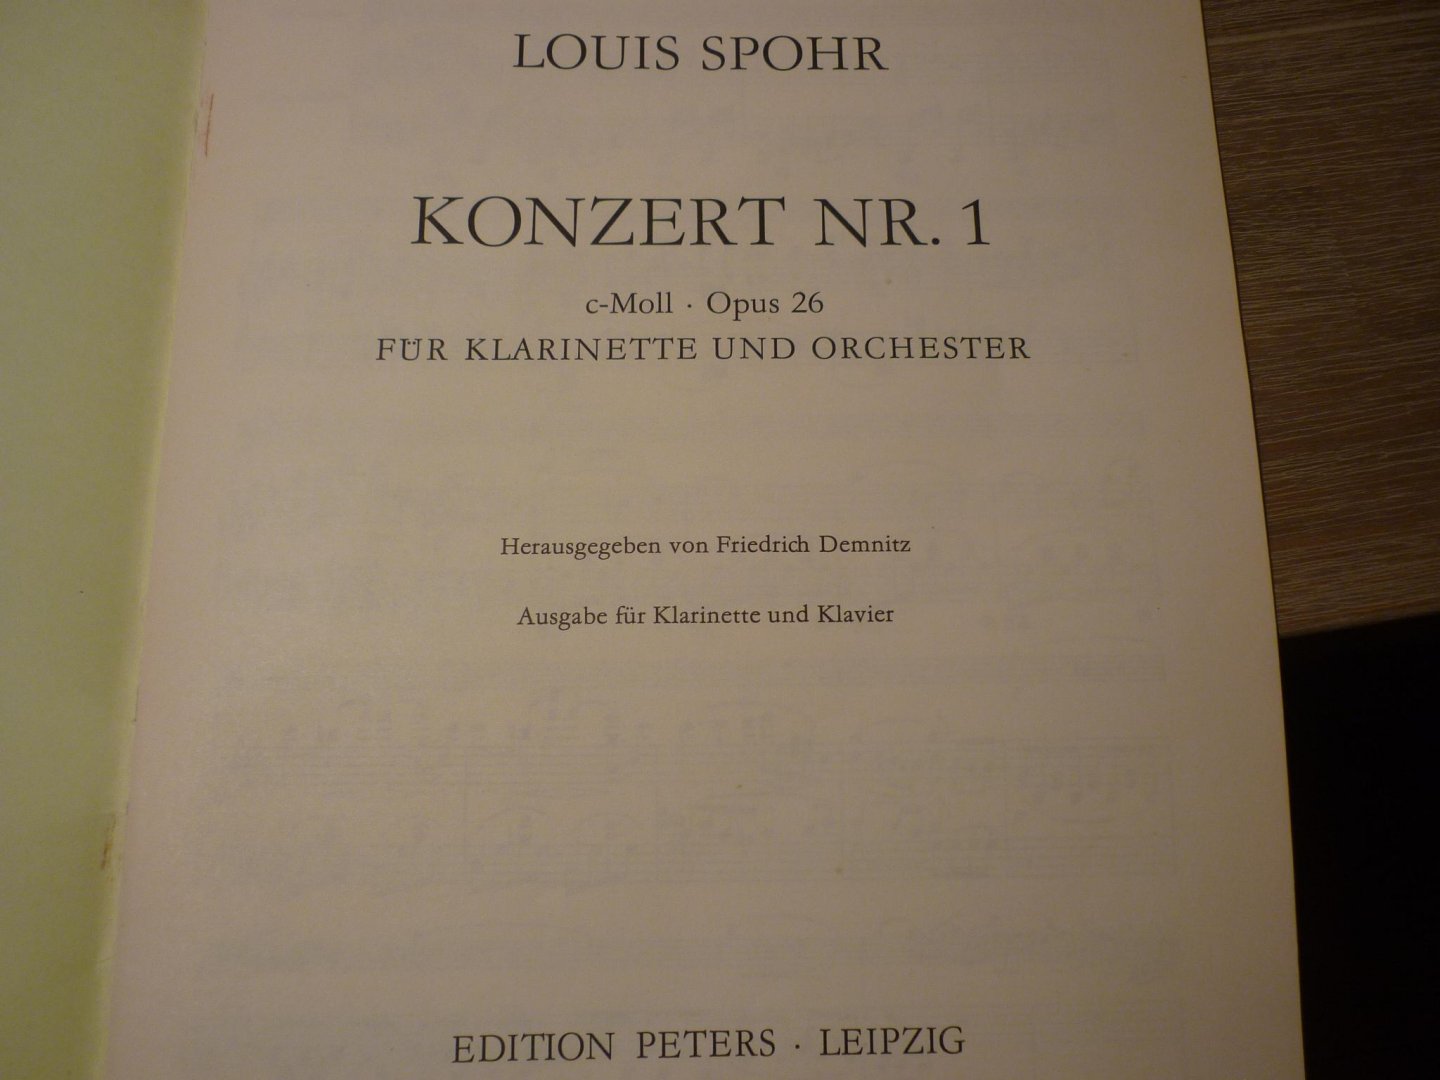 Spohr; Louis - Clarinet Concerto No. 1 in C minor Op. 26 - herausgegeben von Friedrich Demnitz